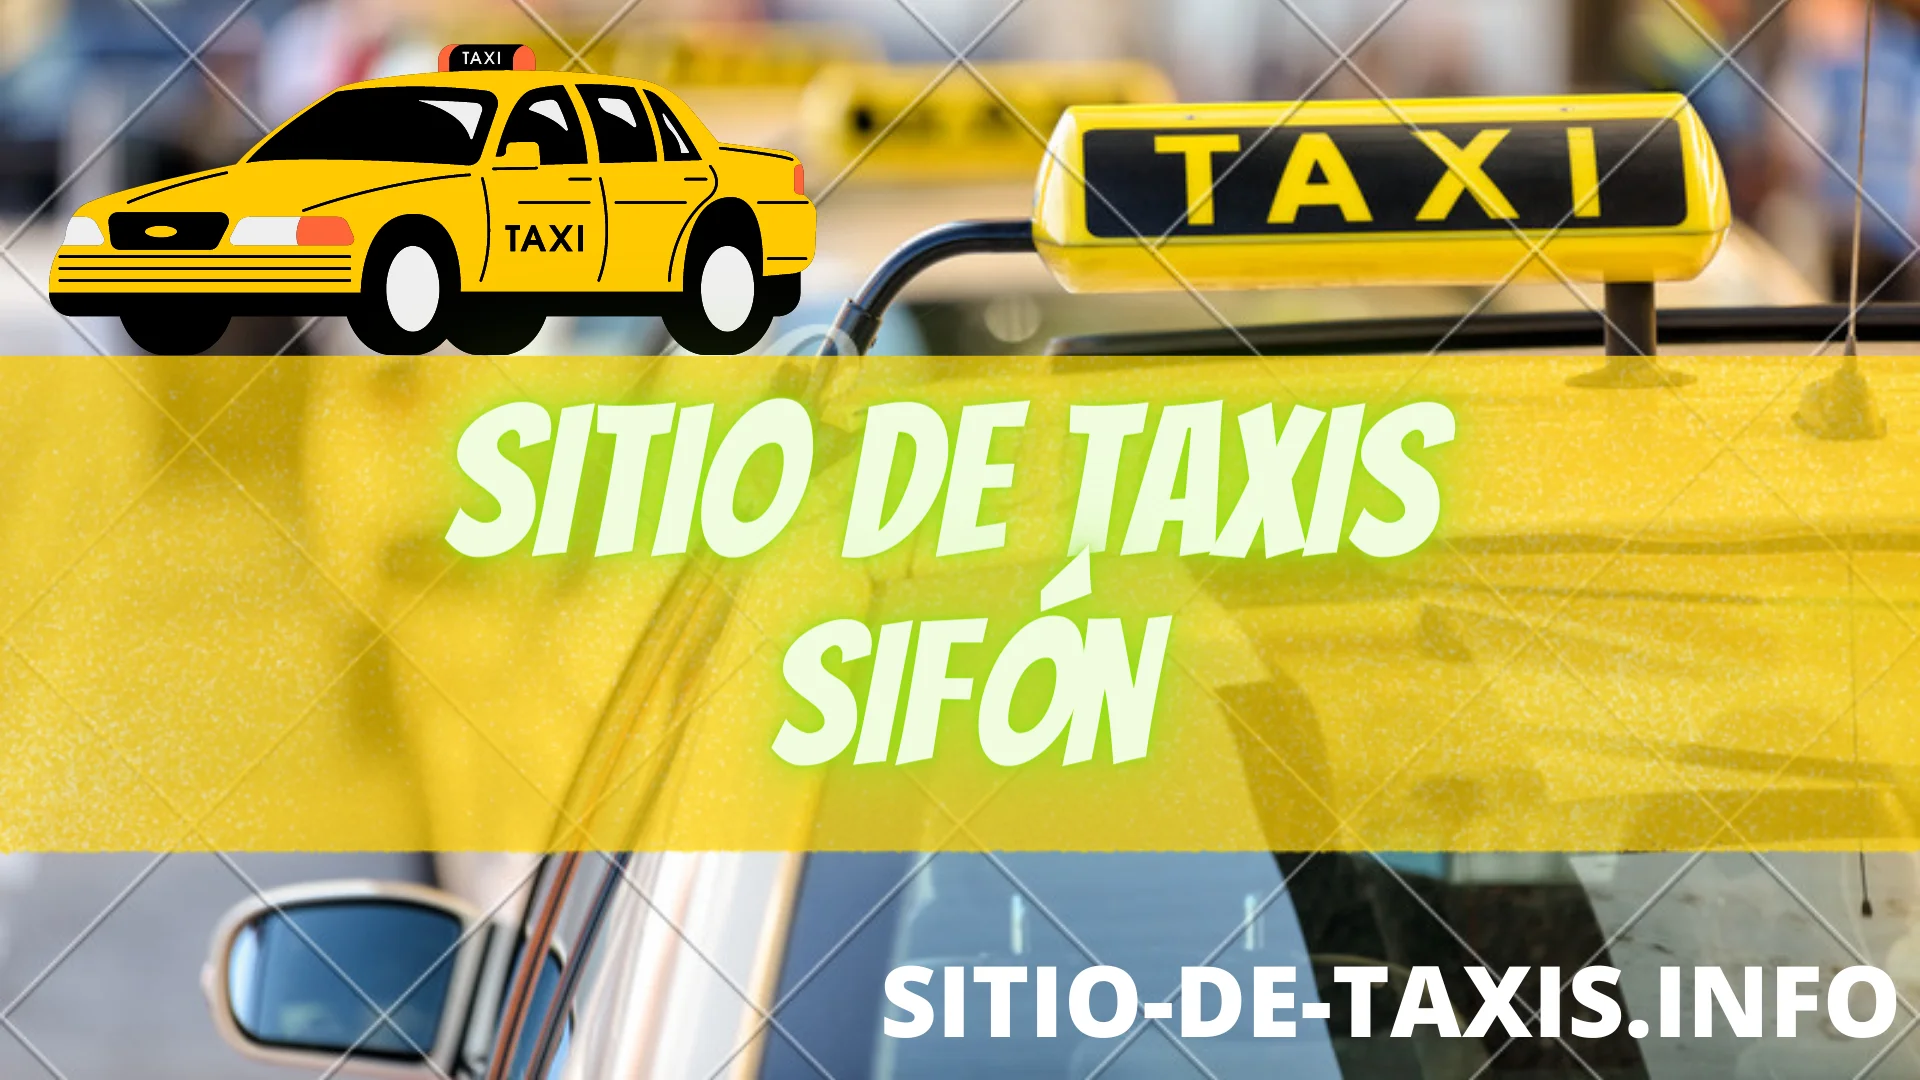 Sitio de Taxis en Sifón